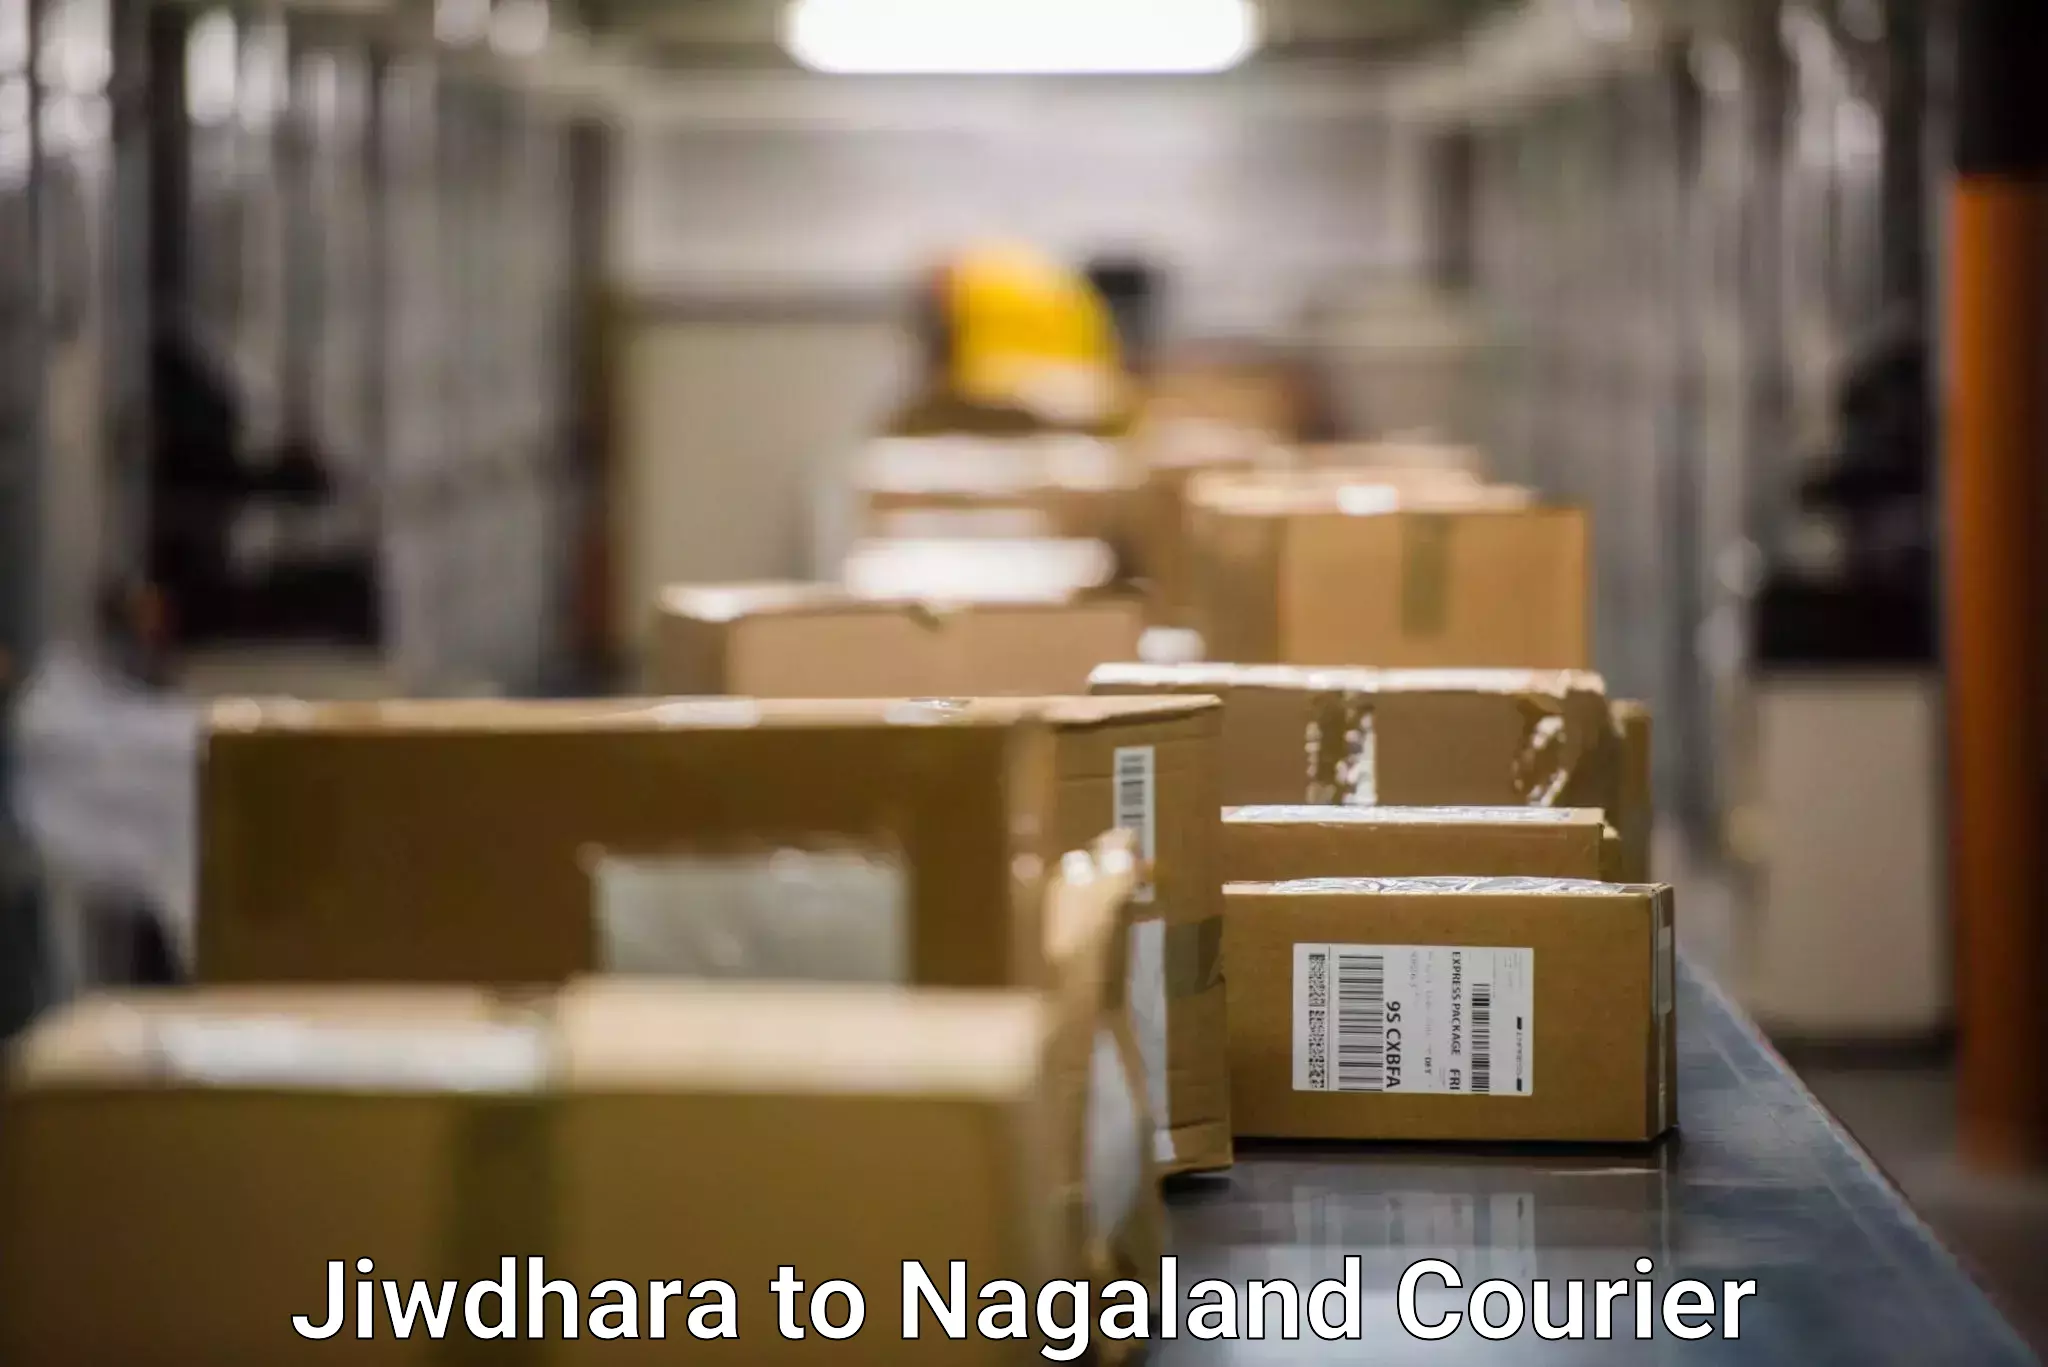 24-hour courier services Jiwdhara to Dimapur